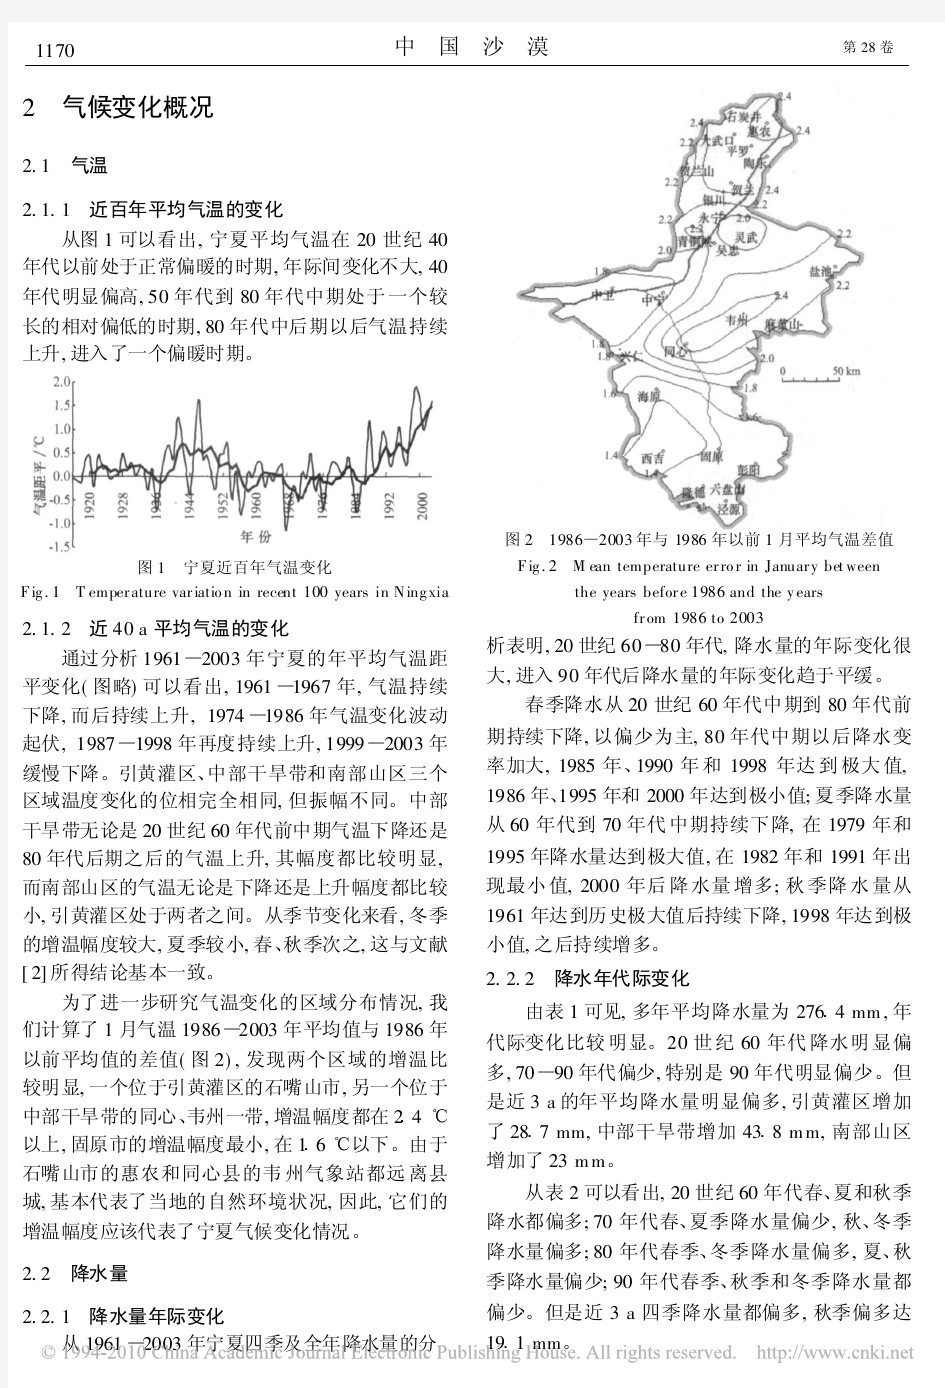 宁夏极端气候事件及其影响分析